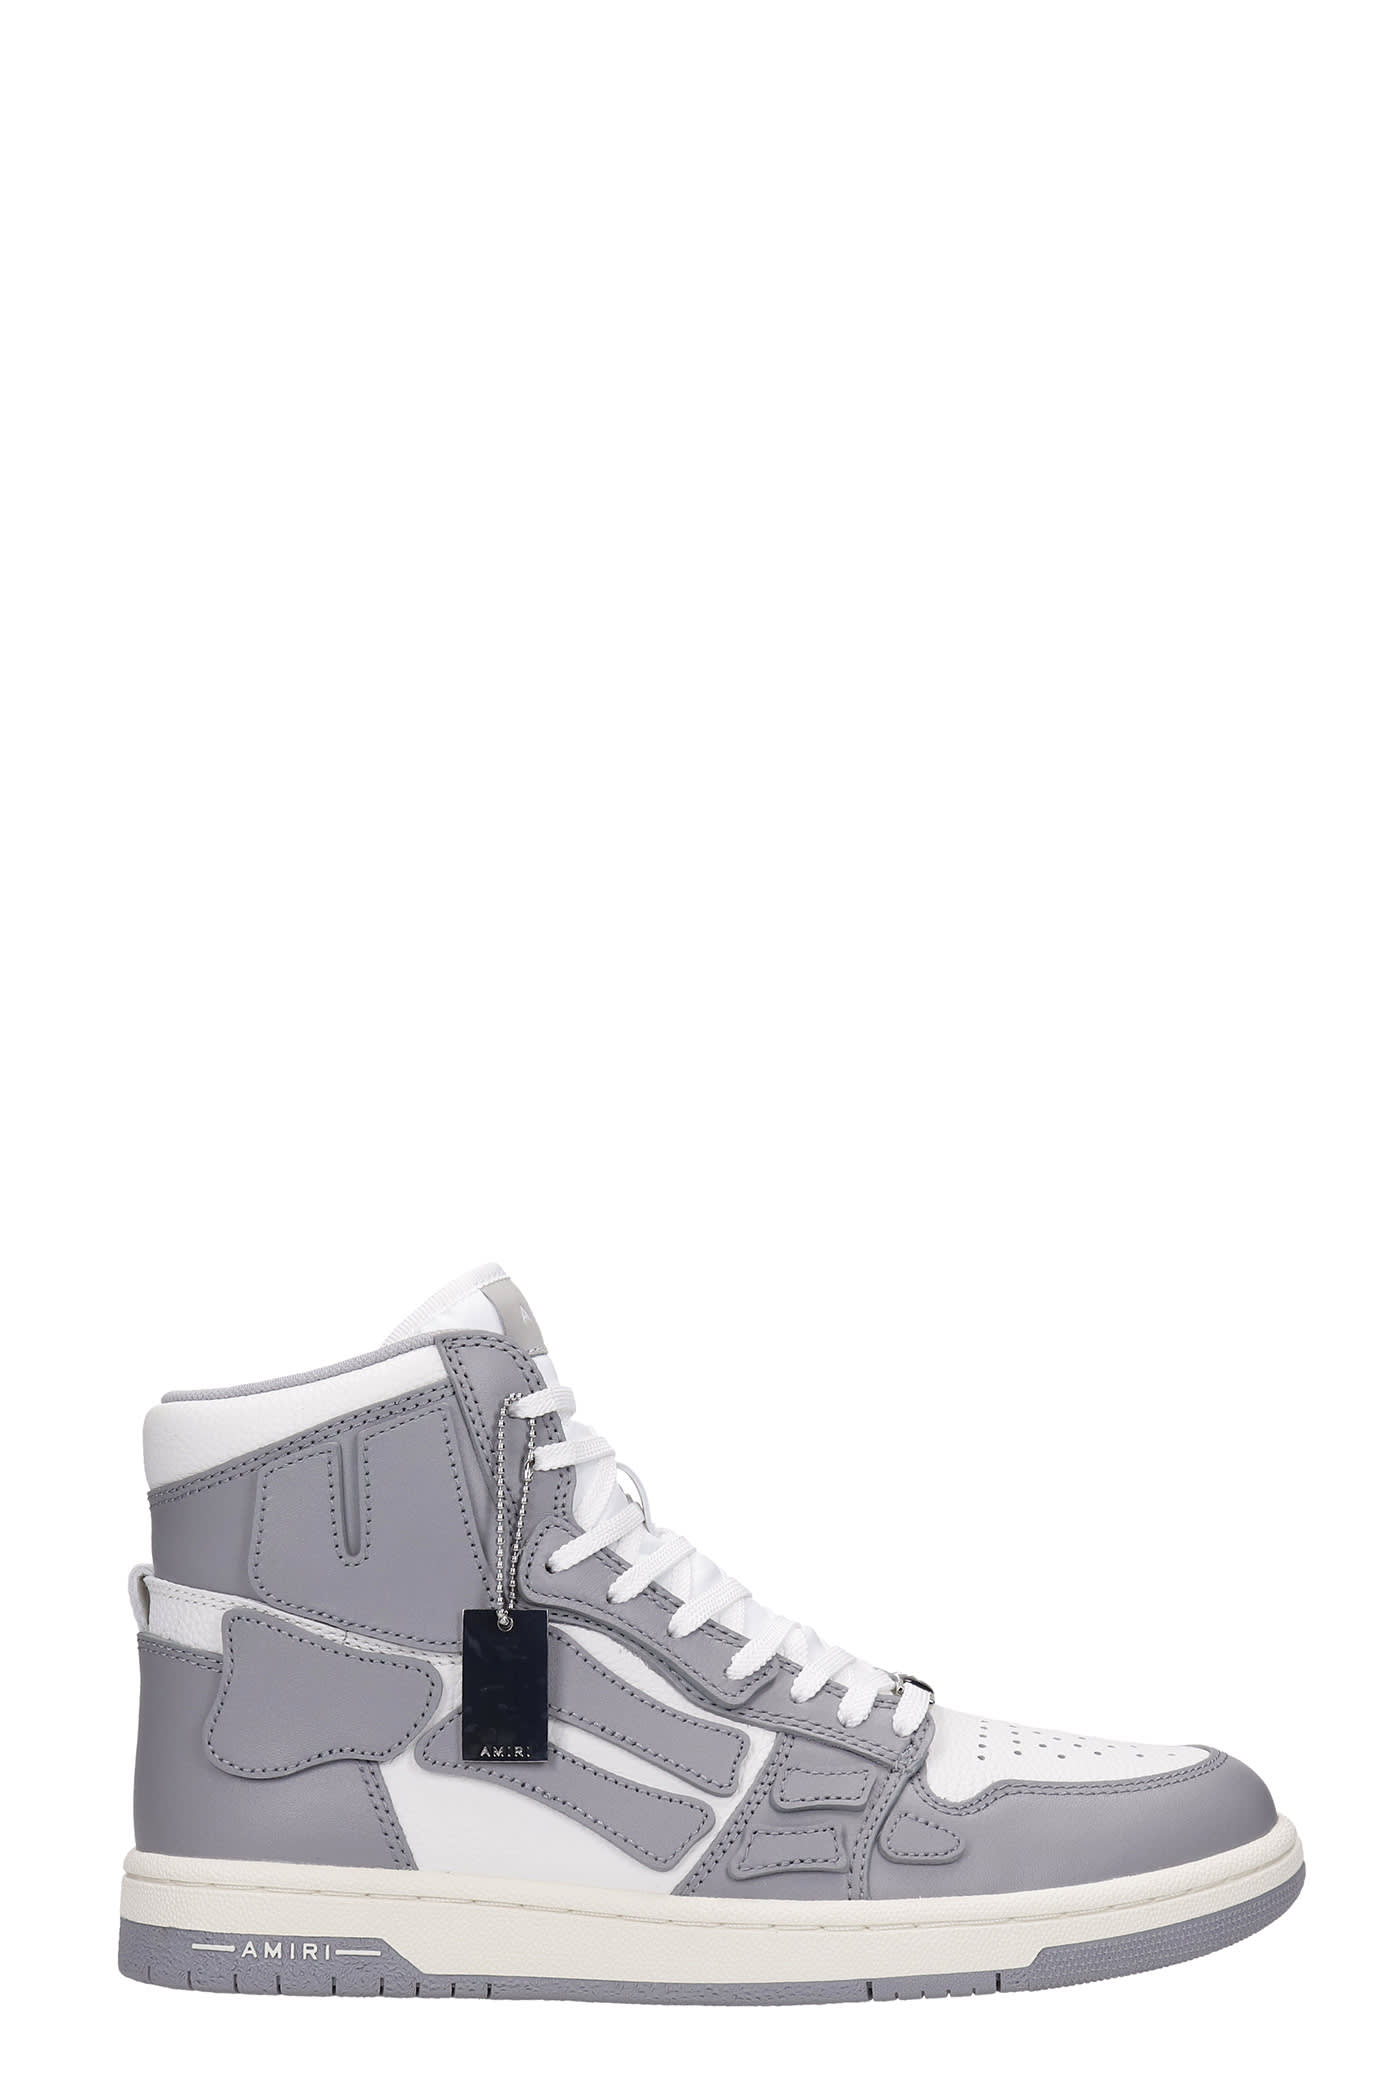 AMIRI Skel Top Sneakers In Grey Leather